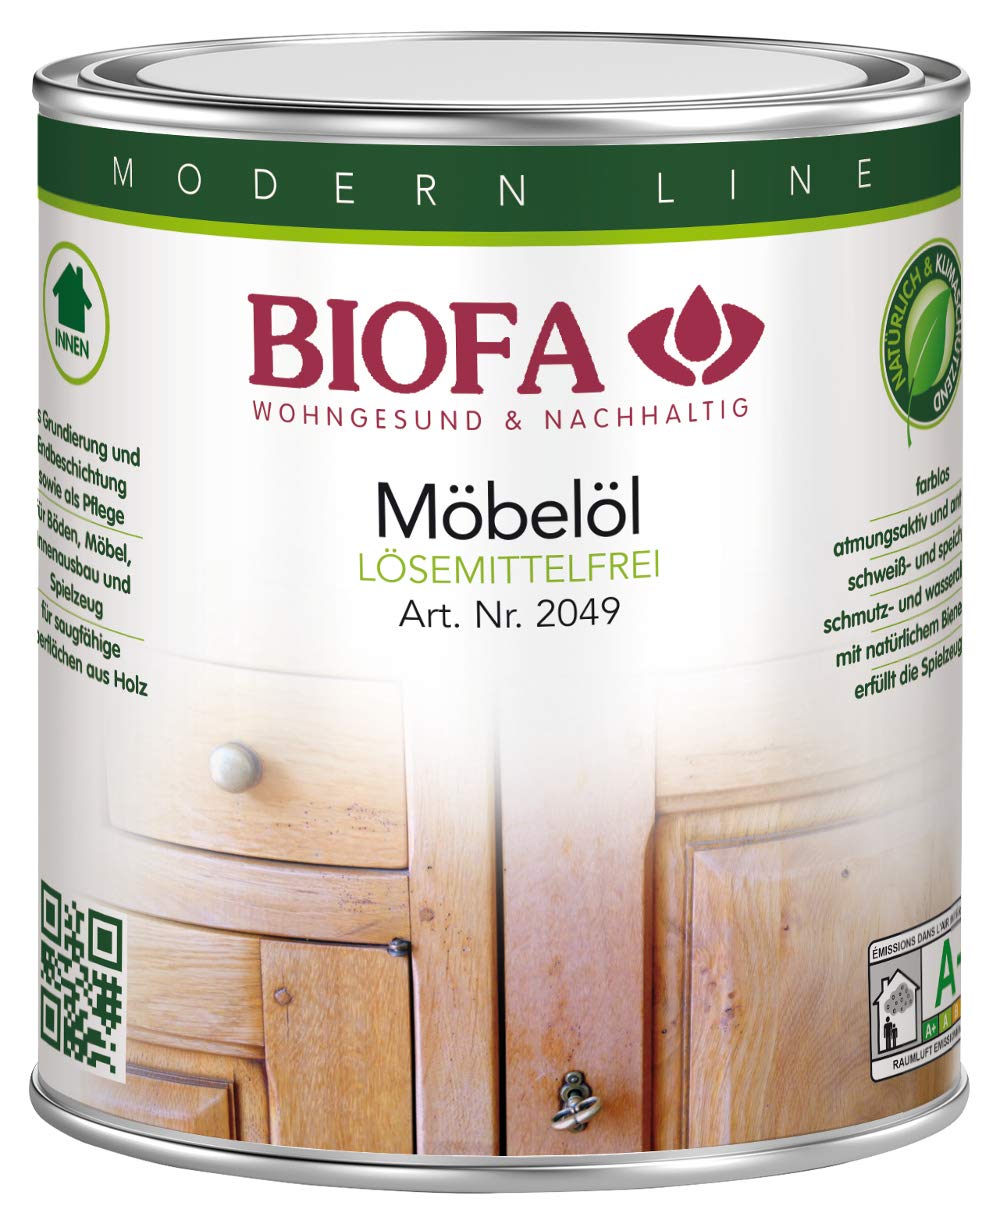 Biofa Möbelöl lösemittelfrei - Möbelpflege für rohe Holzmöbel, geölte Möbel, Innenausbau (0,375 Liter)